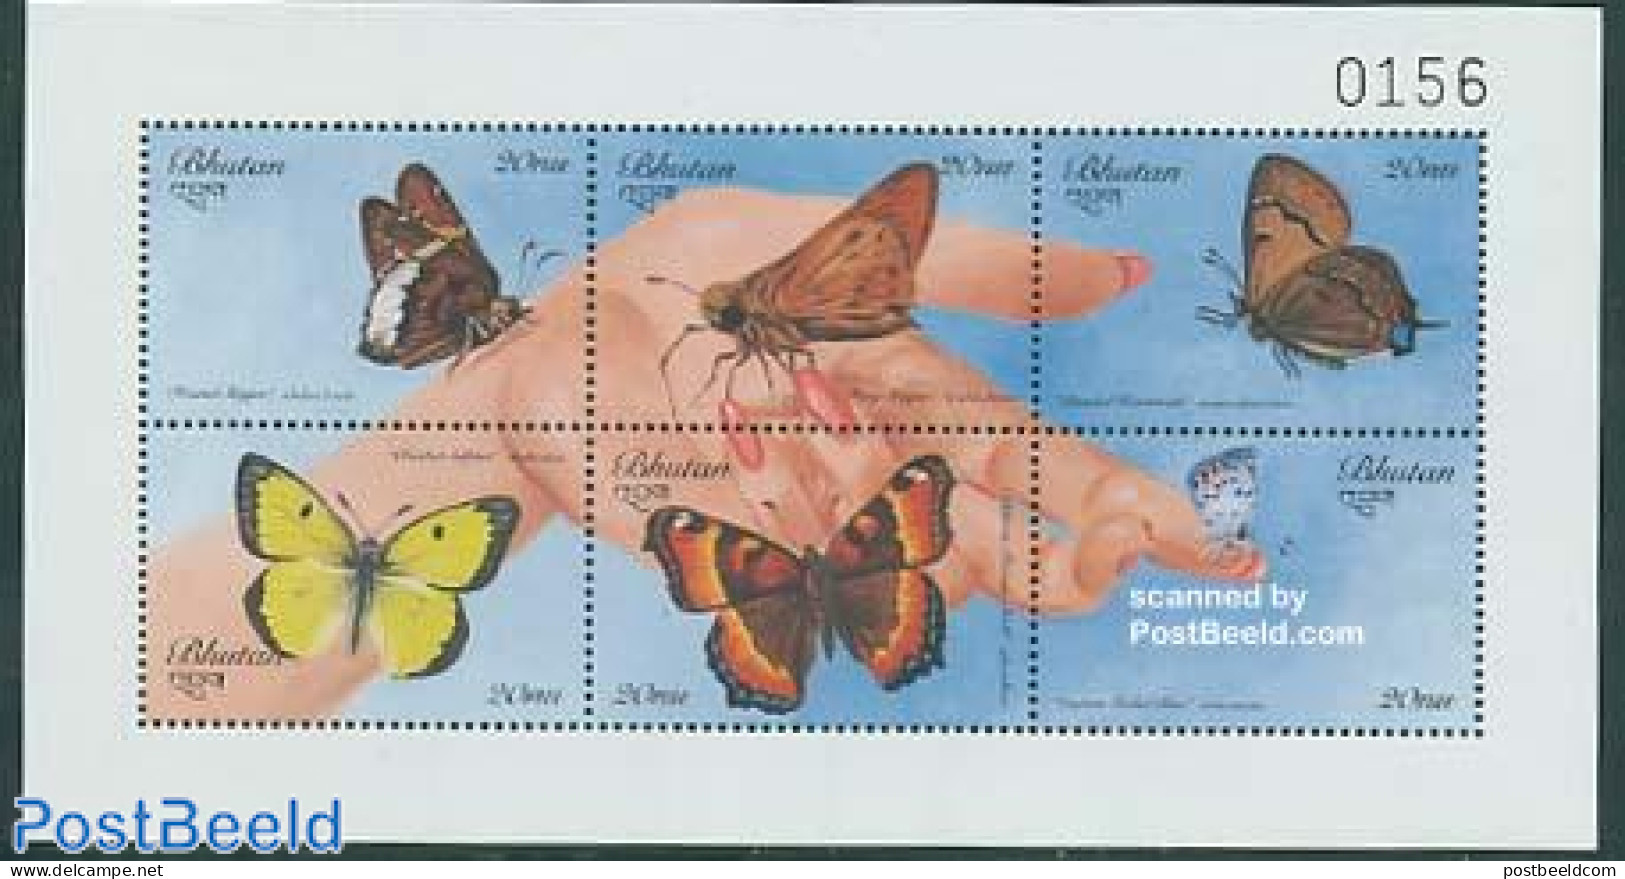 Bhutan 1999 Butterflies 6v M/s, Mint NH, Nature - Butterflies - Bhután